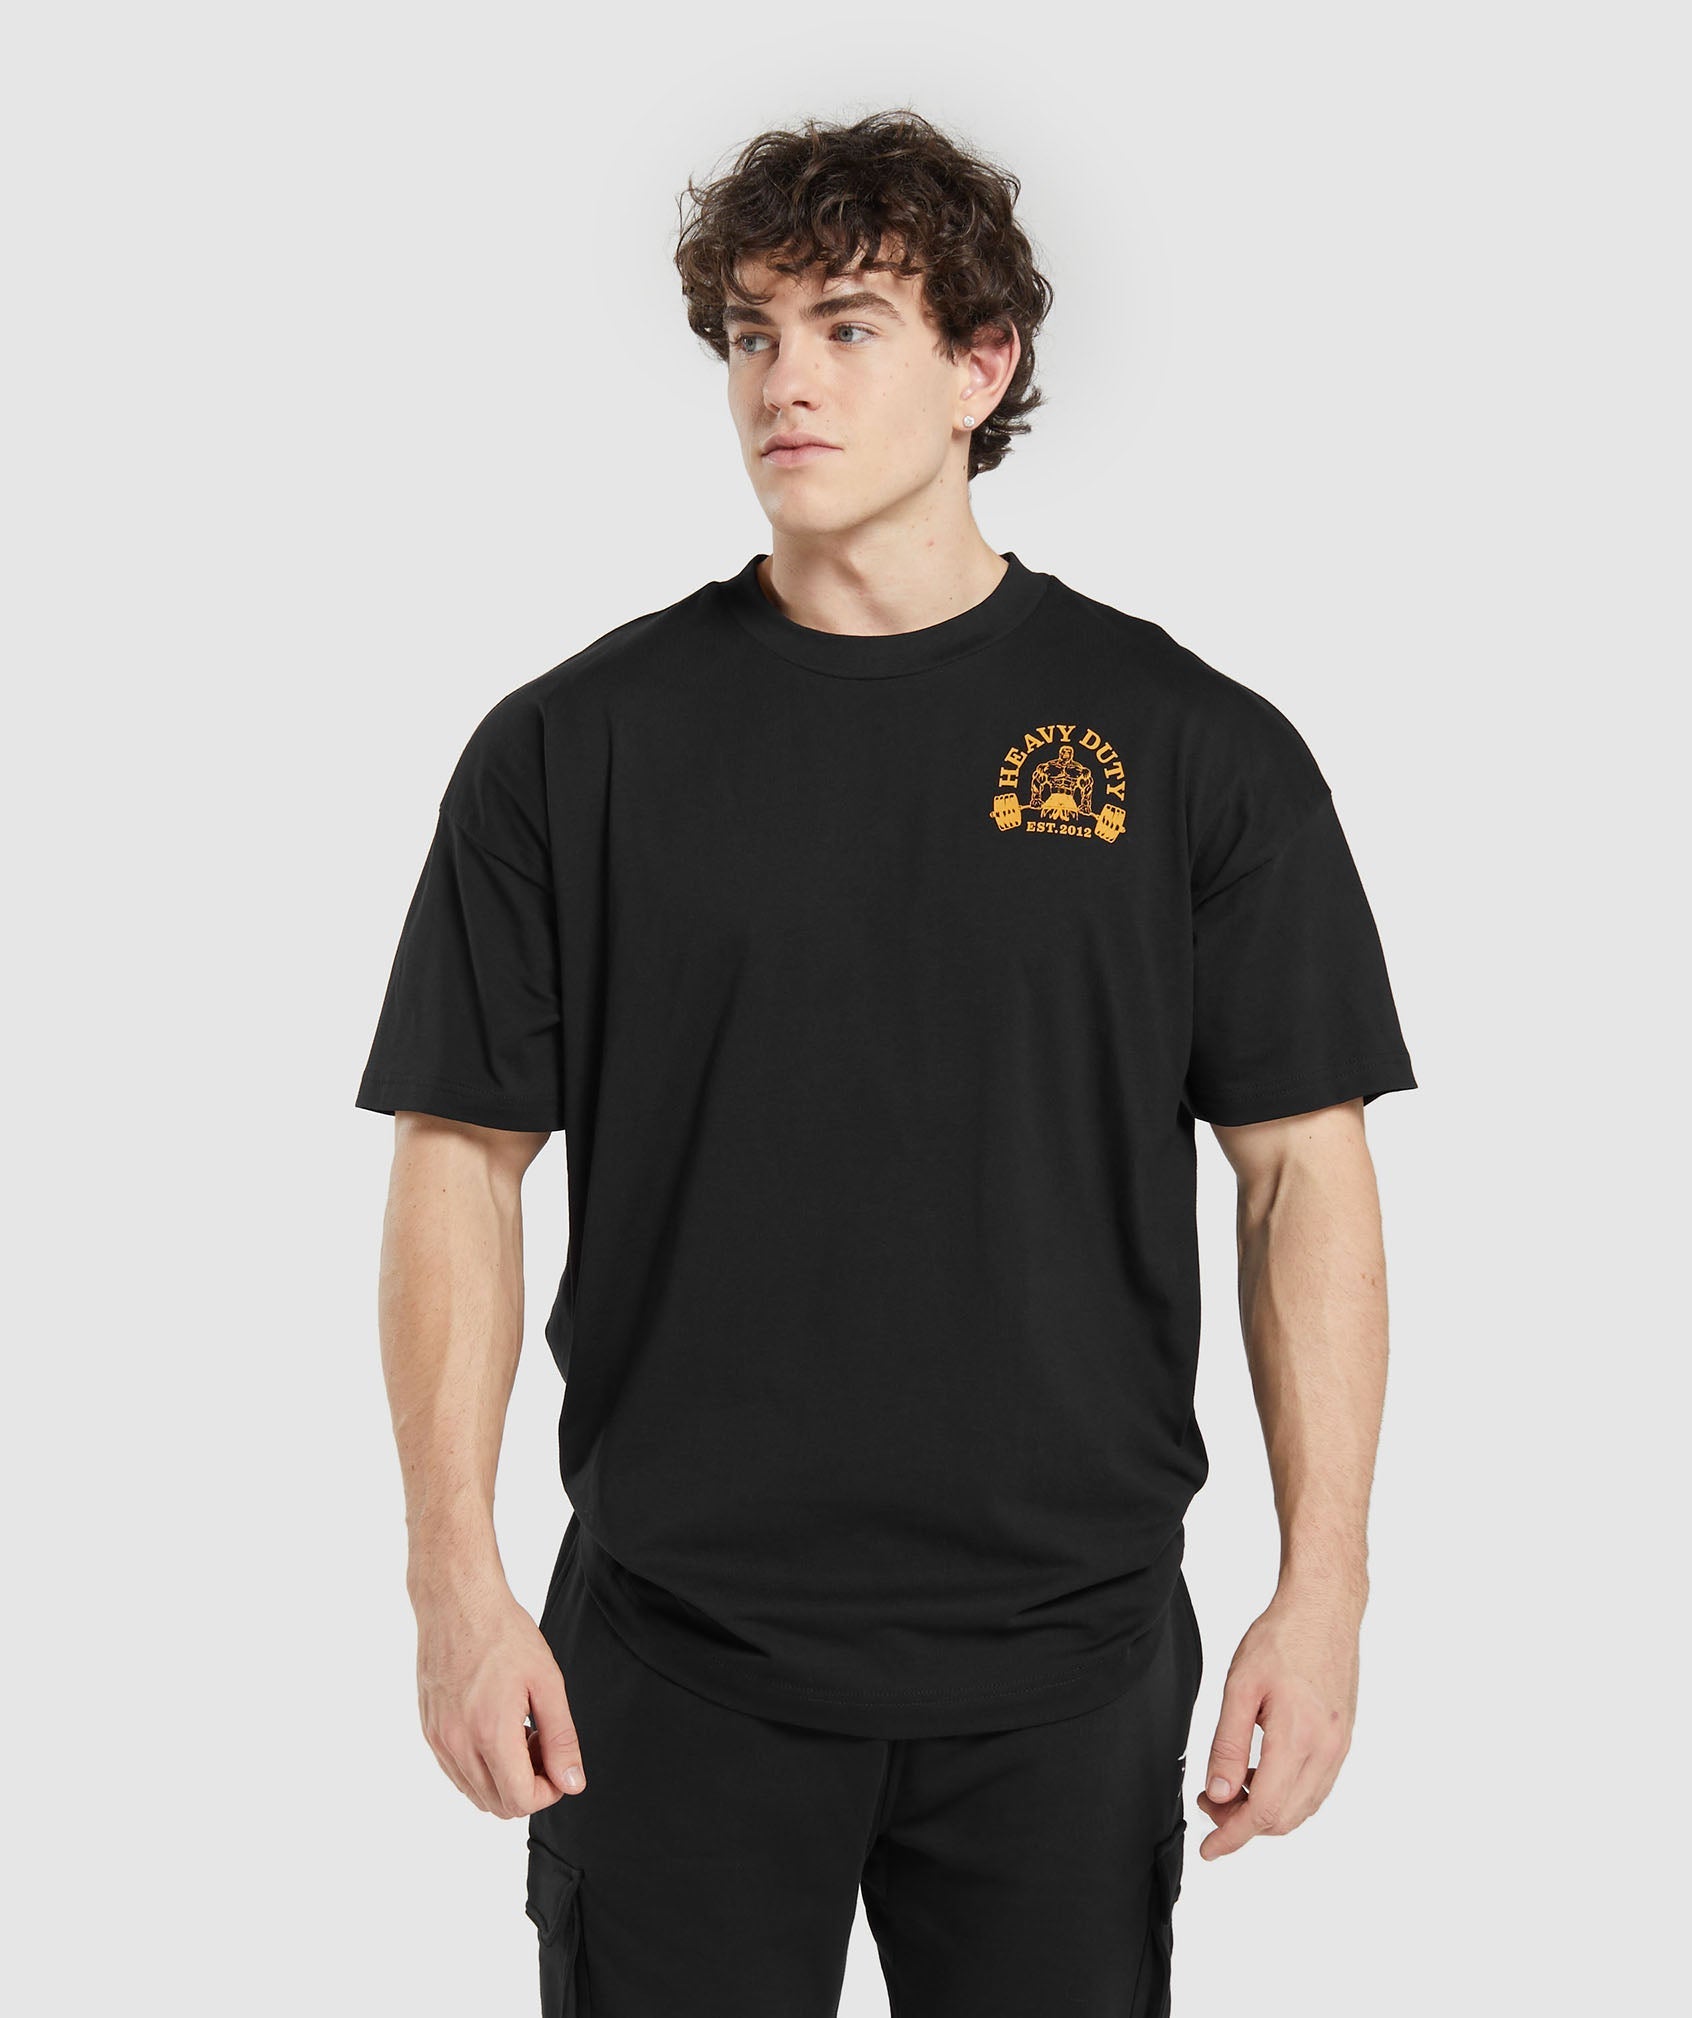 Heavy Duty T-Shirt in Black - view 2